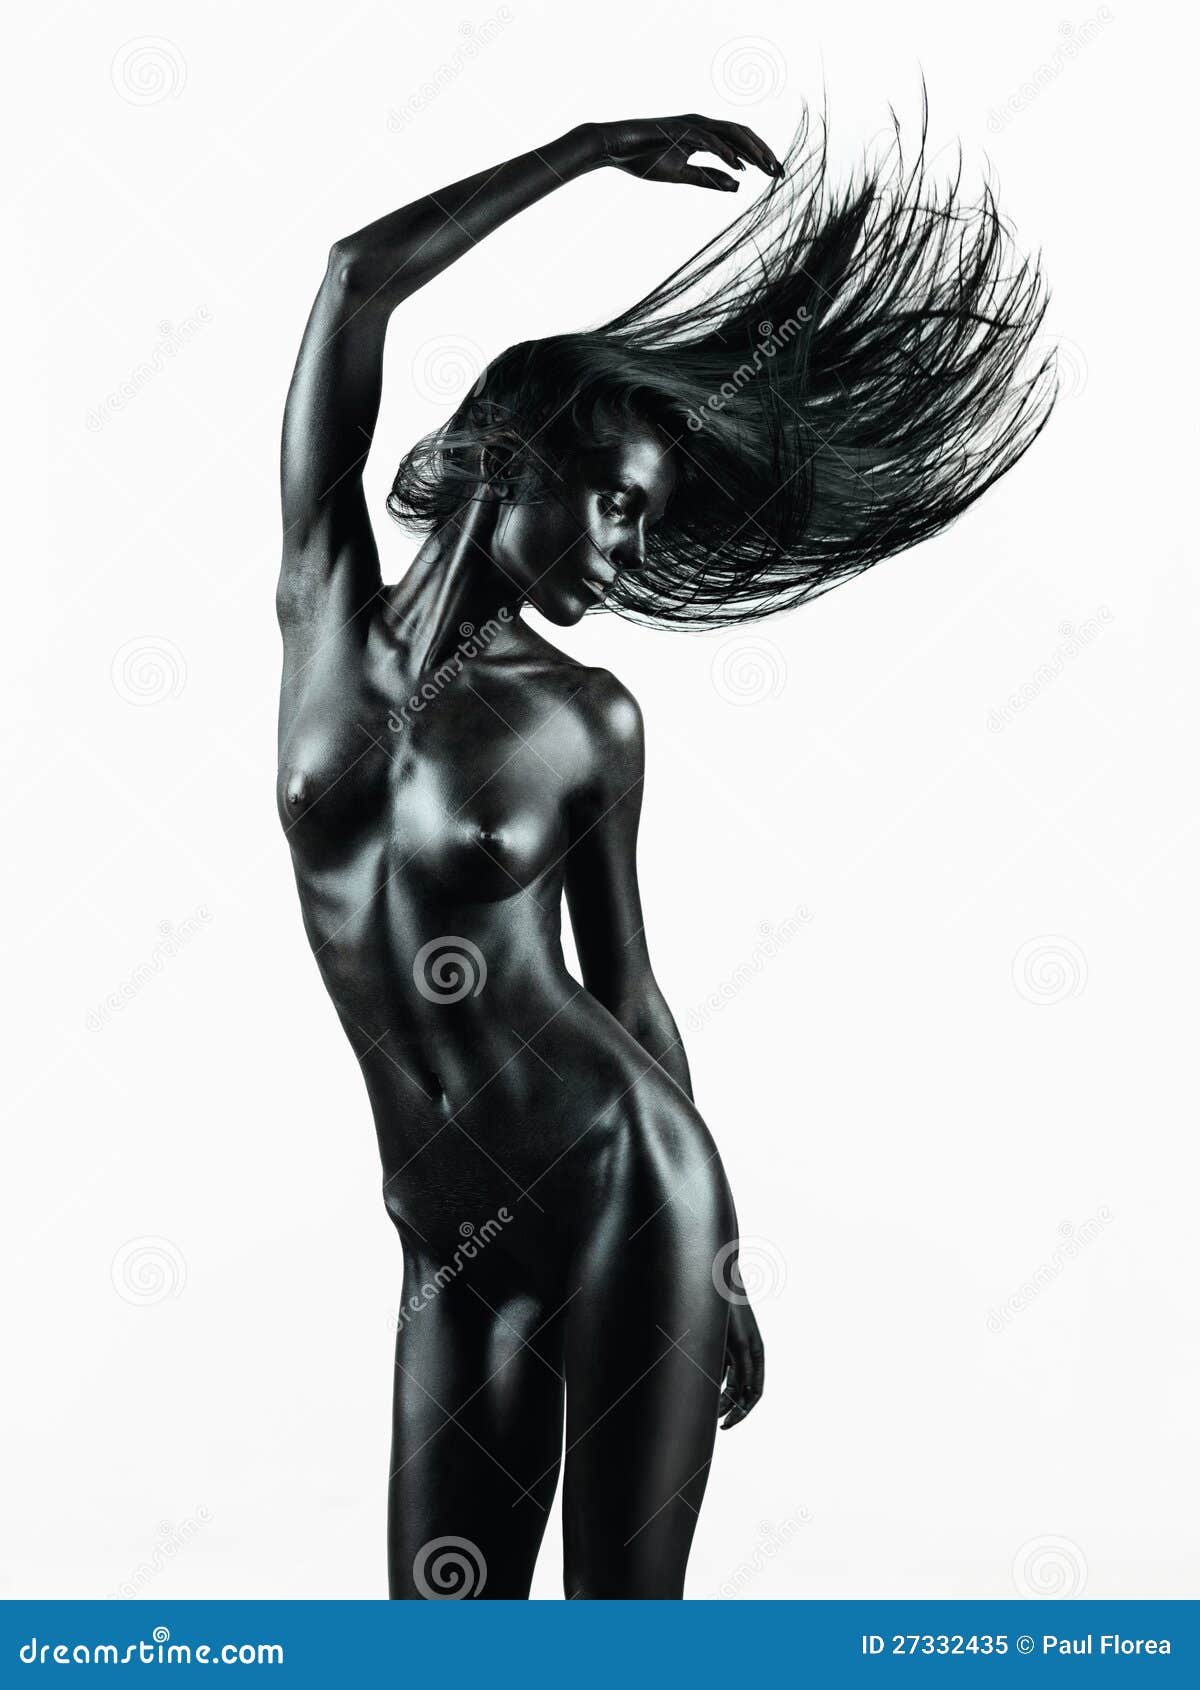 Nu artístico, corpo nu perfeito, mulher jovem e sexy em uma parede escura no banheiro, fotografia em preto e branco, | Foto Premium